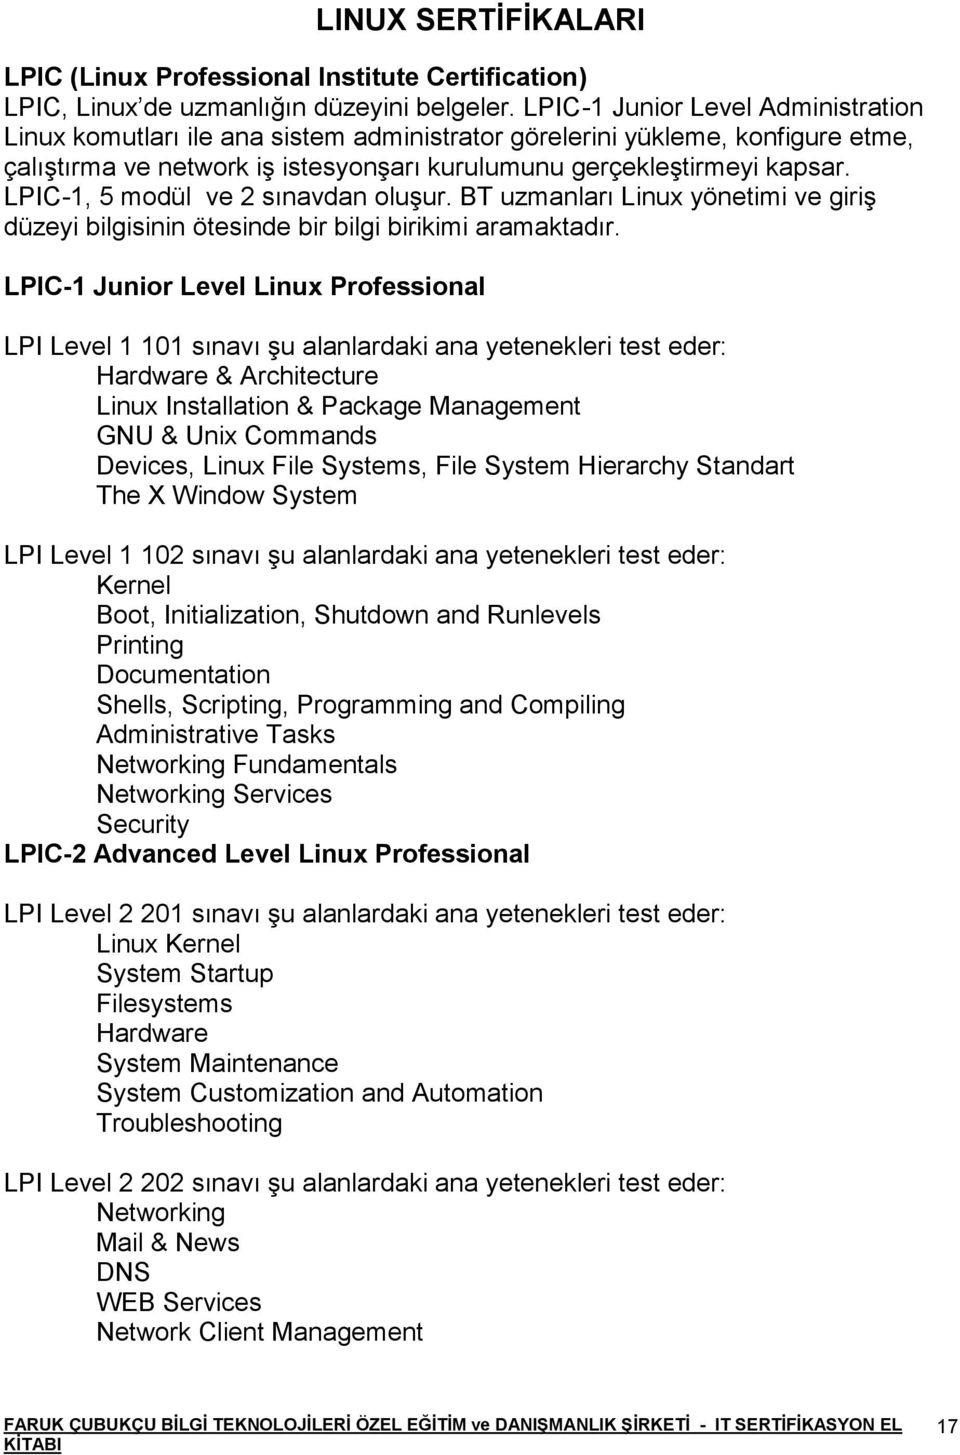 LPIC-1, 5 modül ve 2 sınavdan oluşur. BT uzmanları Linux yönetimi ve giriş düzeyi bilgisinin ötesinde bir bilgi birikimi aramaktadır.